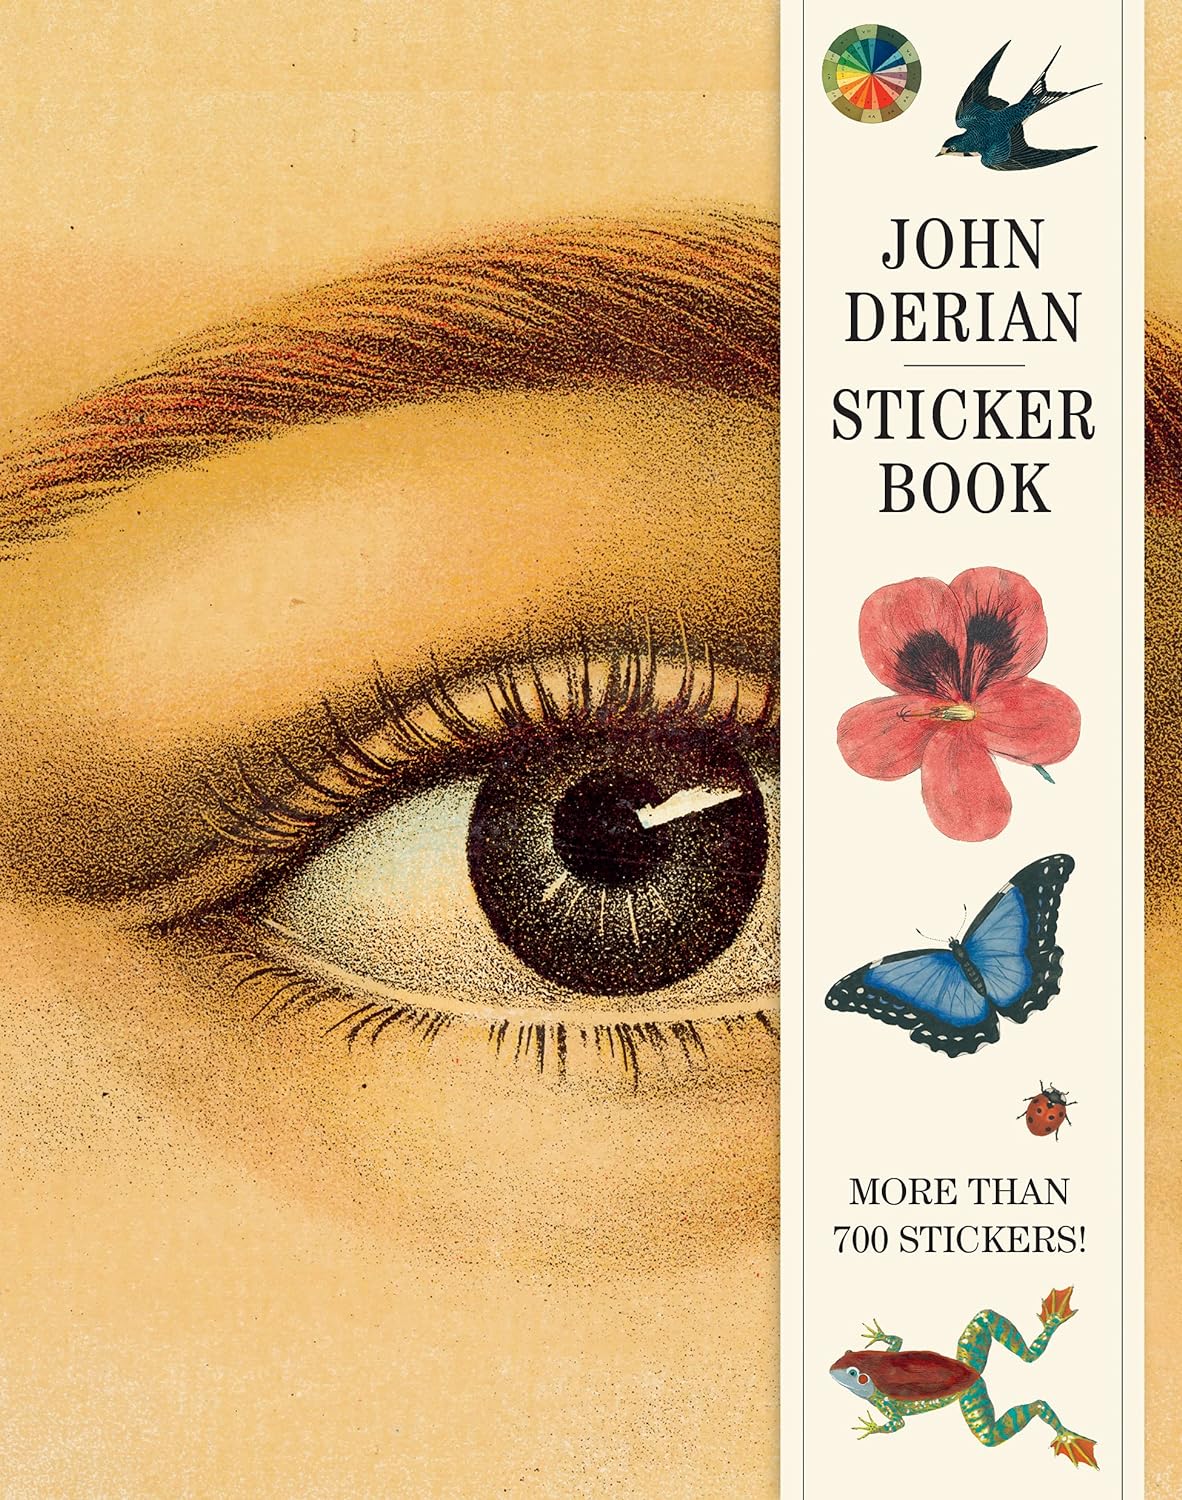 John DERIAN - STICKER BOOK